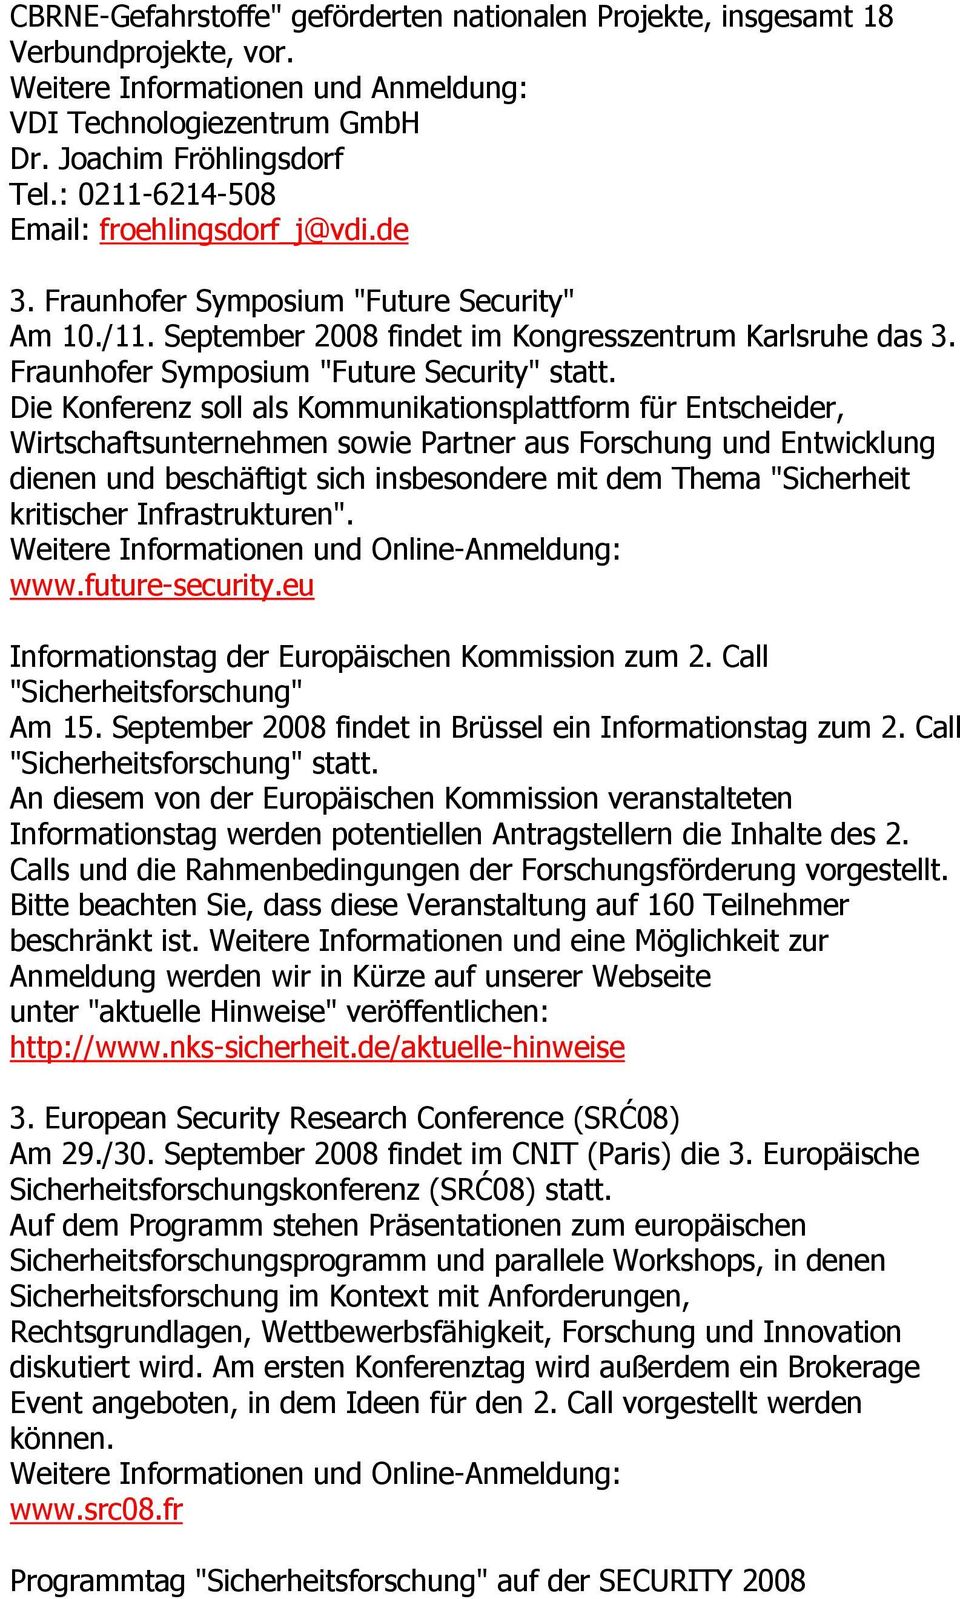 Fraunhofer Symposium "Future Security" statt.